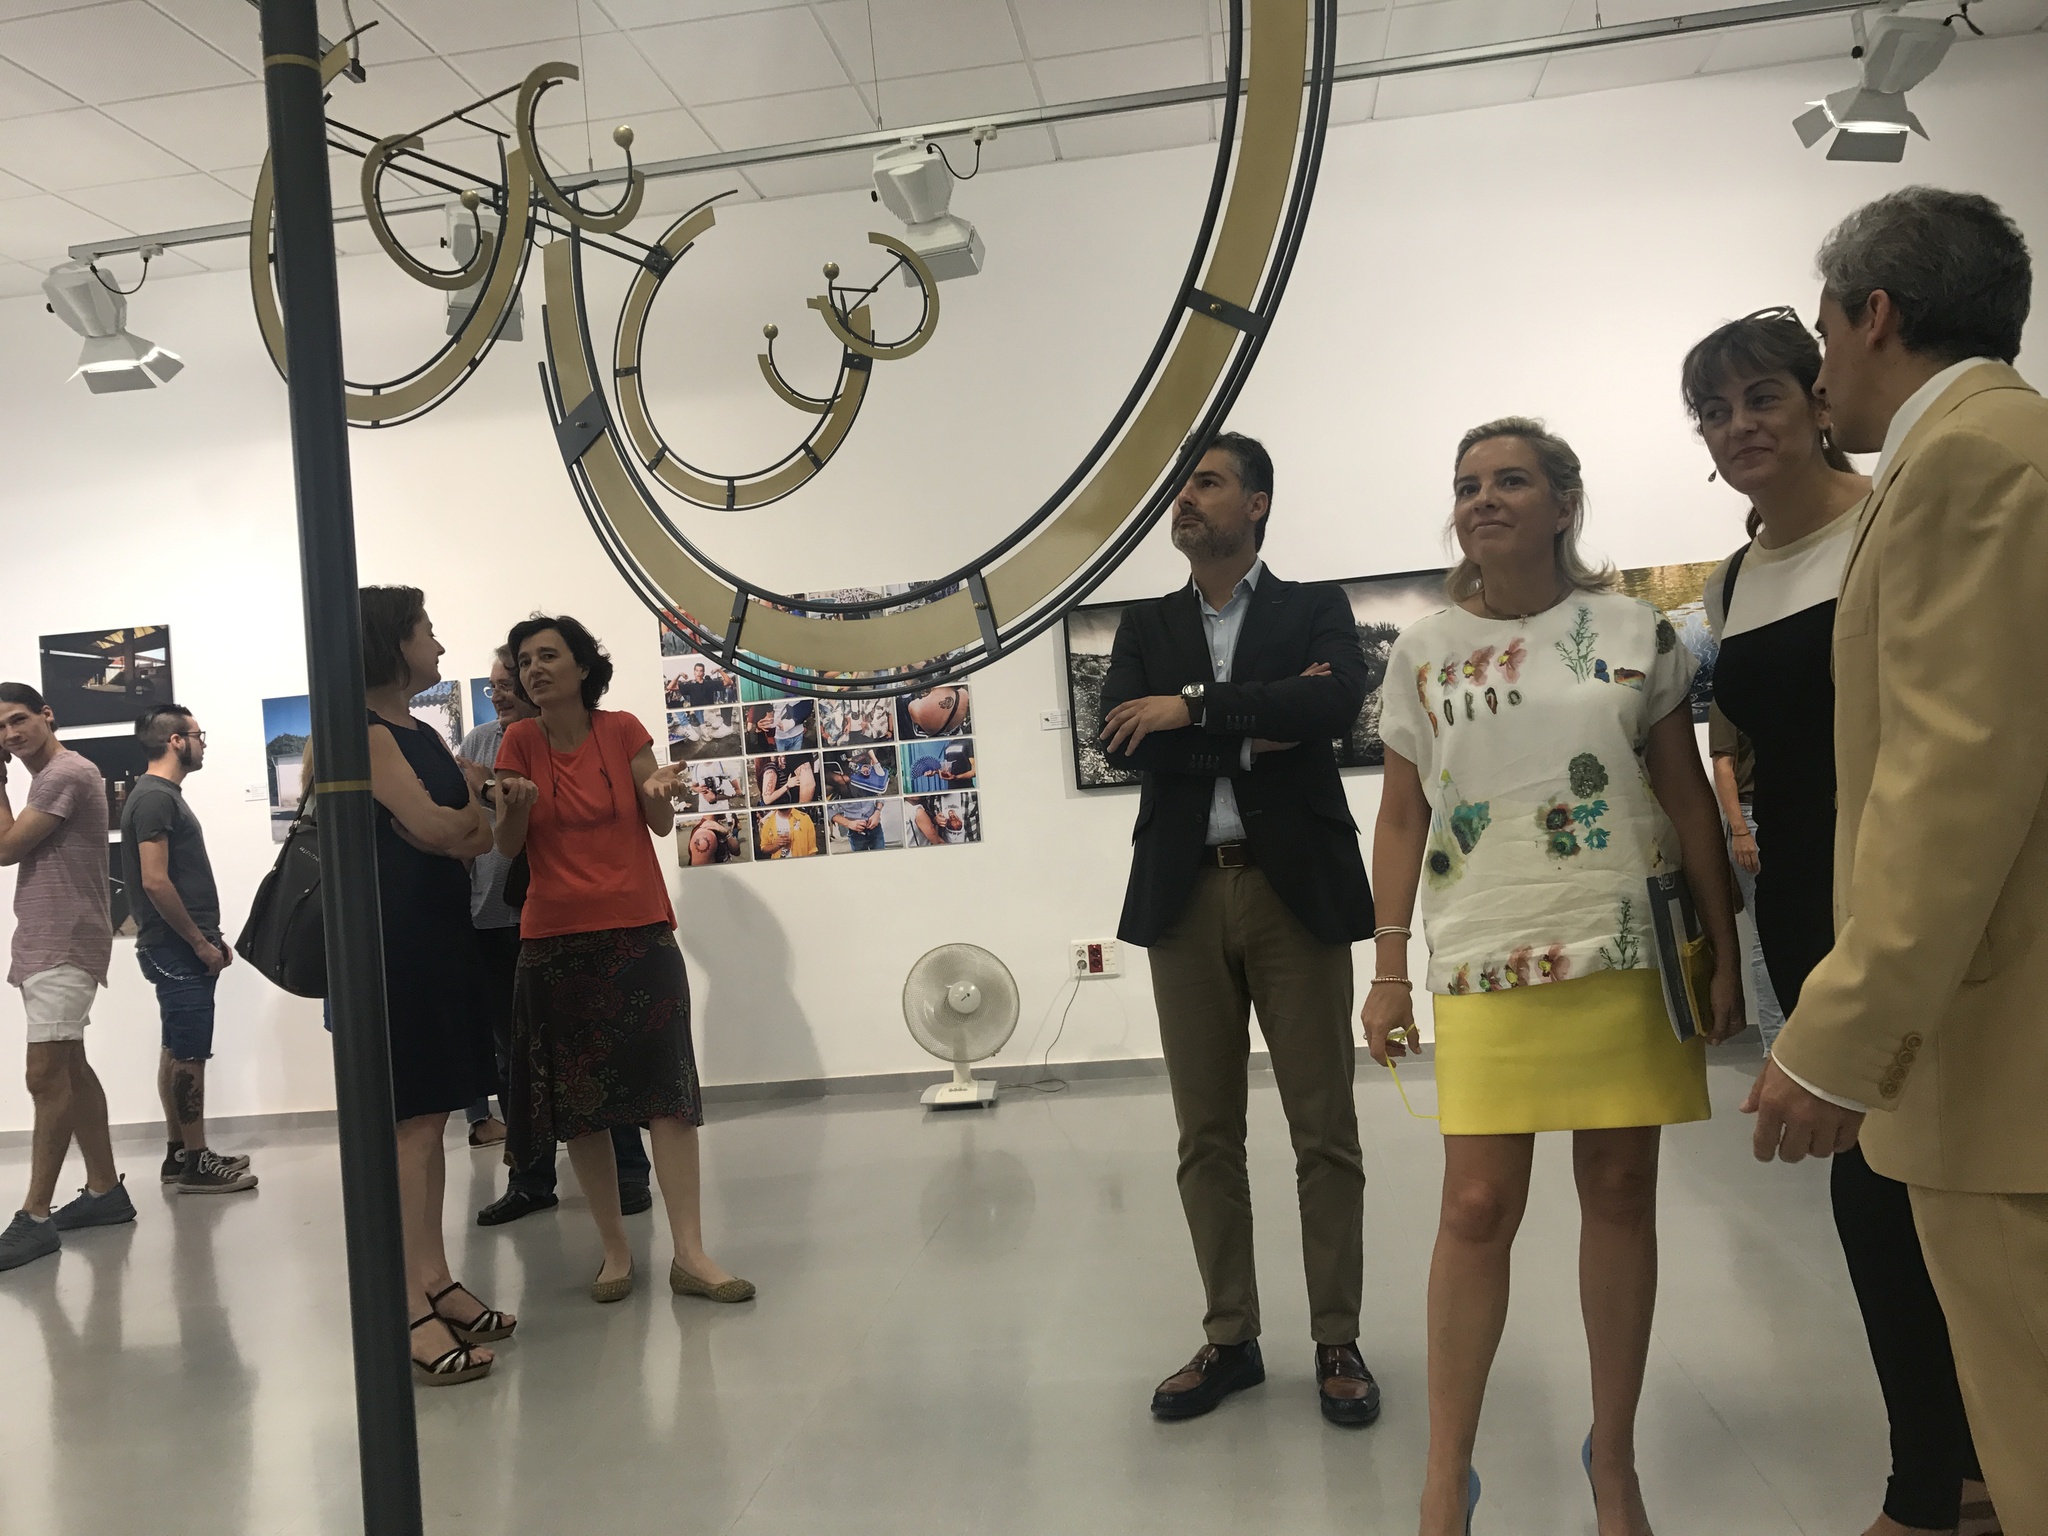 Adela Martínez-Cachá inaugura la exposición 'Especies' que recoge los trabajos de los alumnos de la Escuela de Bellas Artes